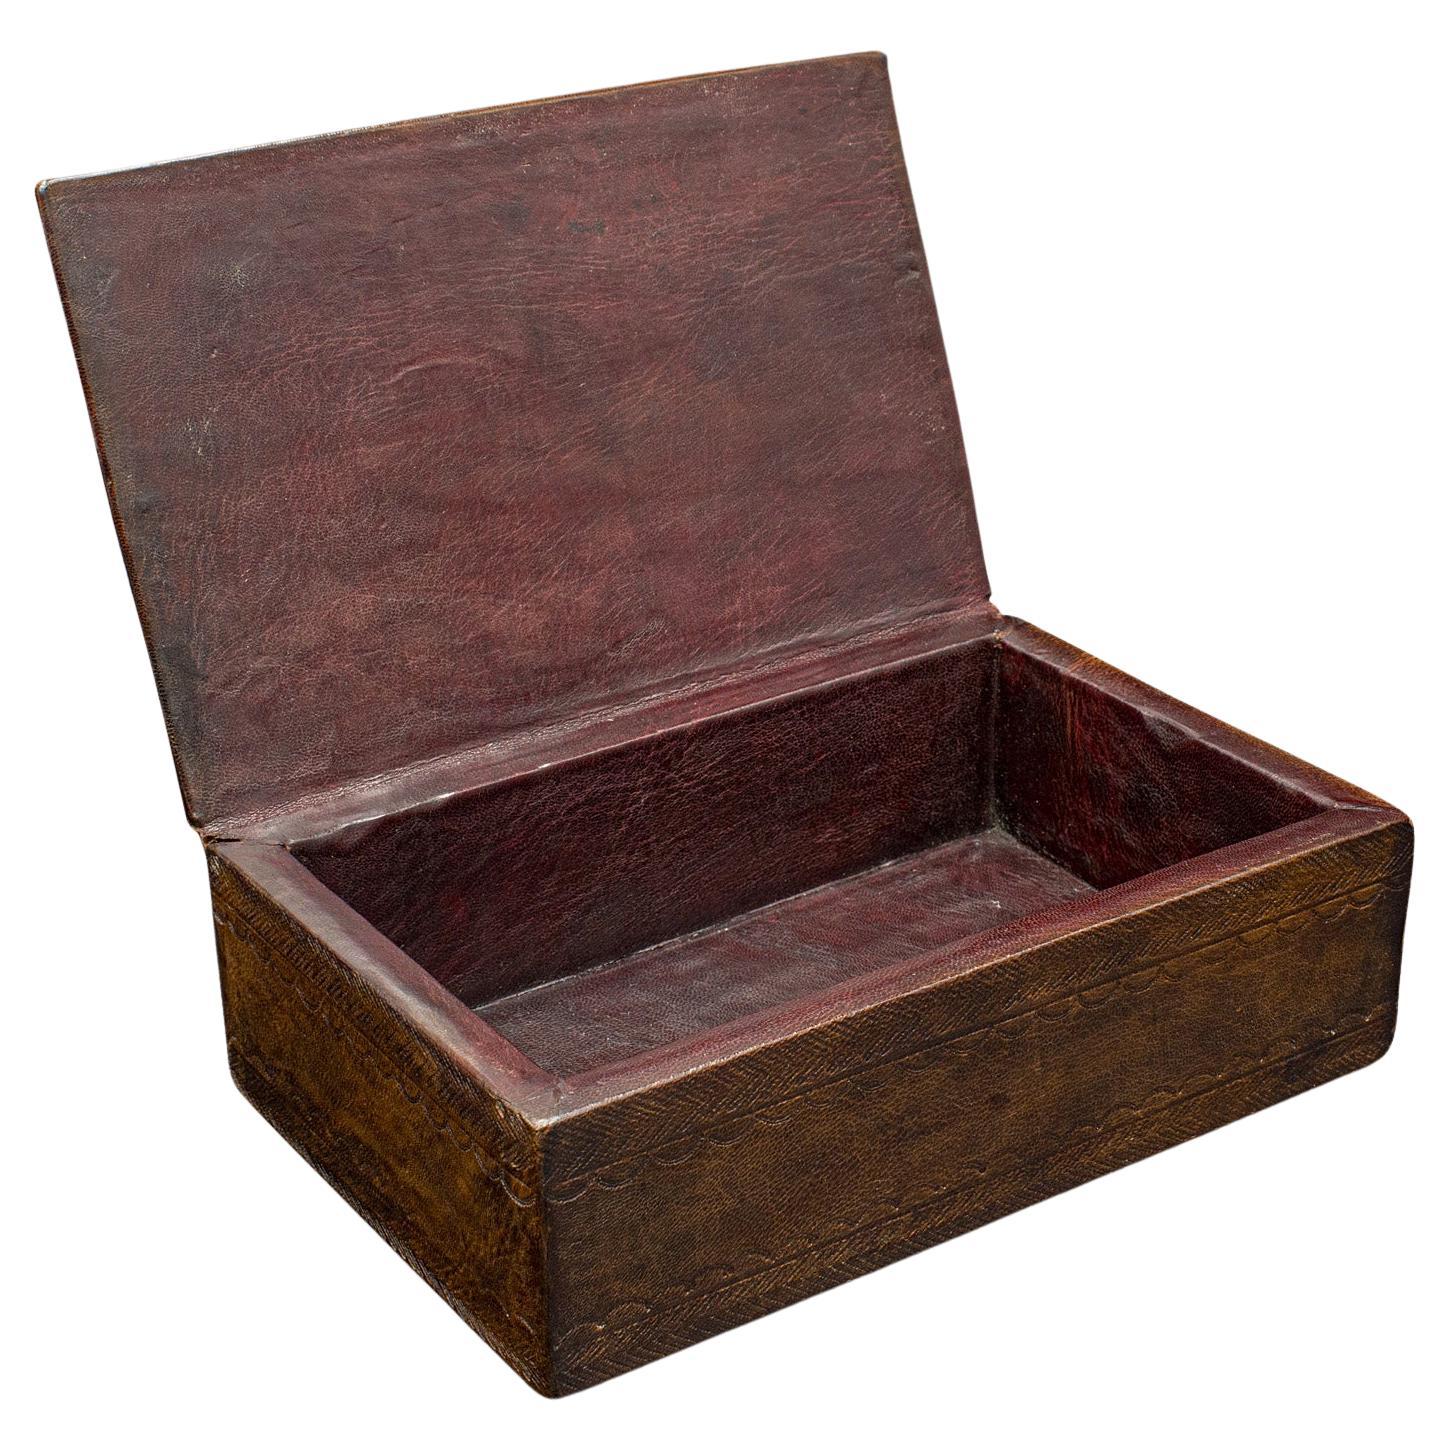 Tuareg Handgefertigte Vintage-Schachtel, afrikanisch, Leder, Deko-Etui, Mid-Century